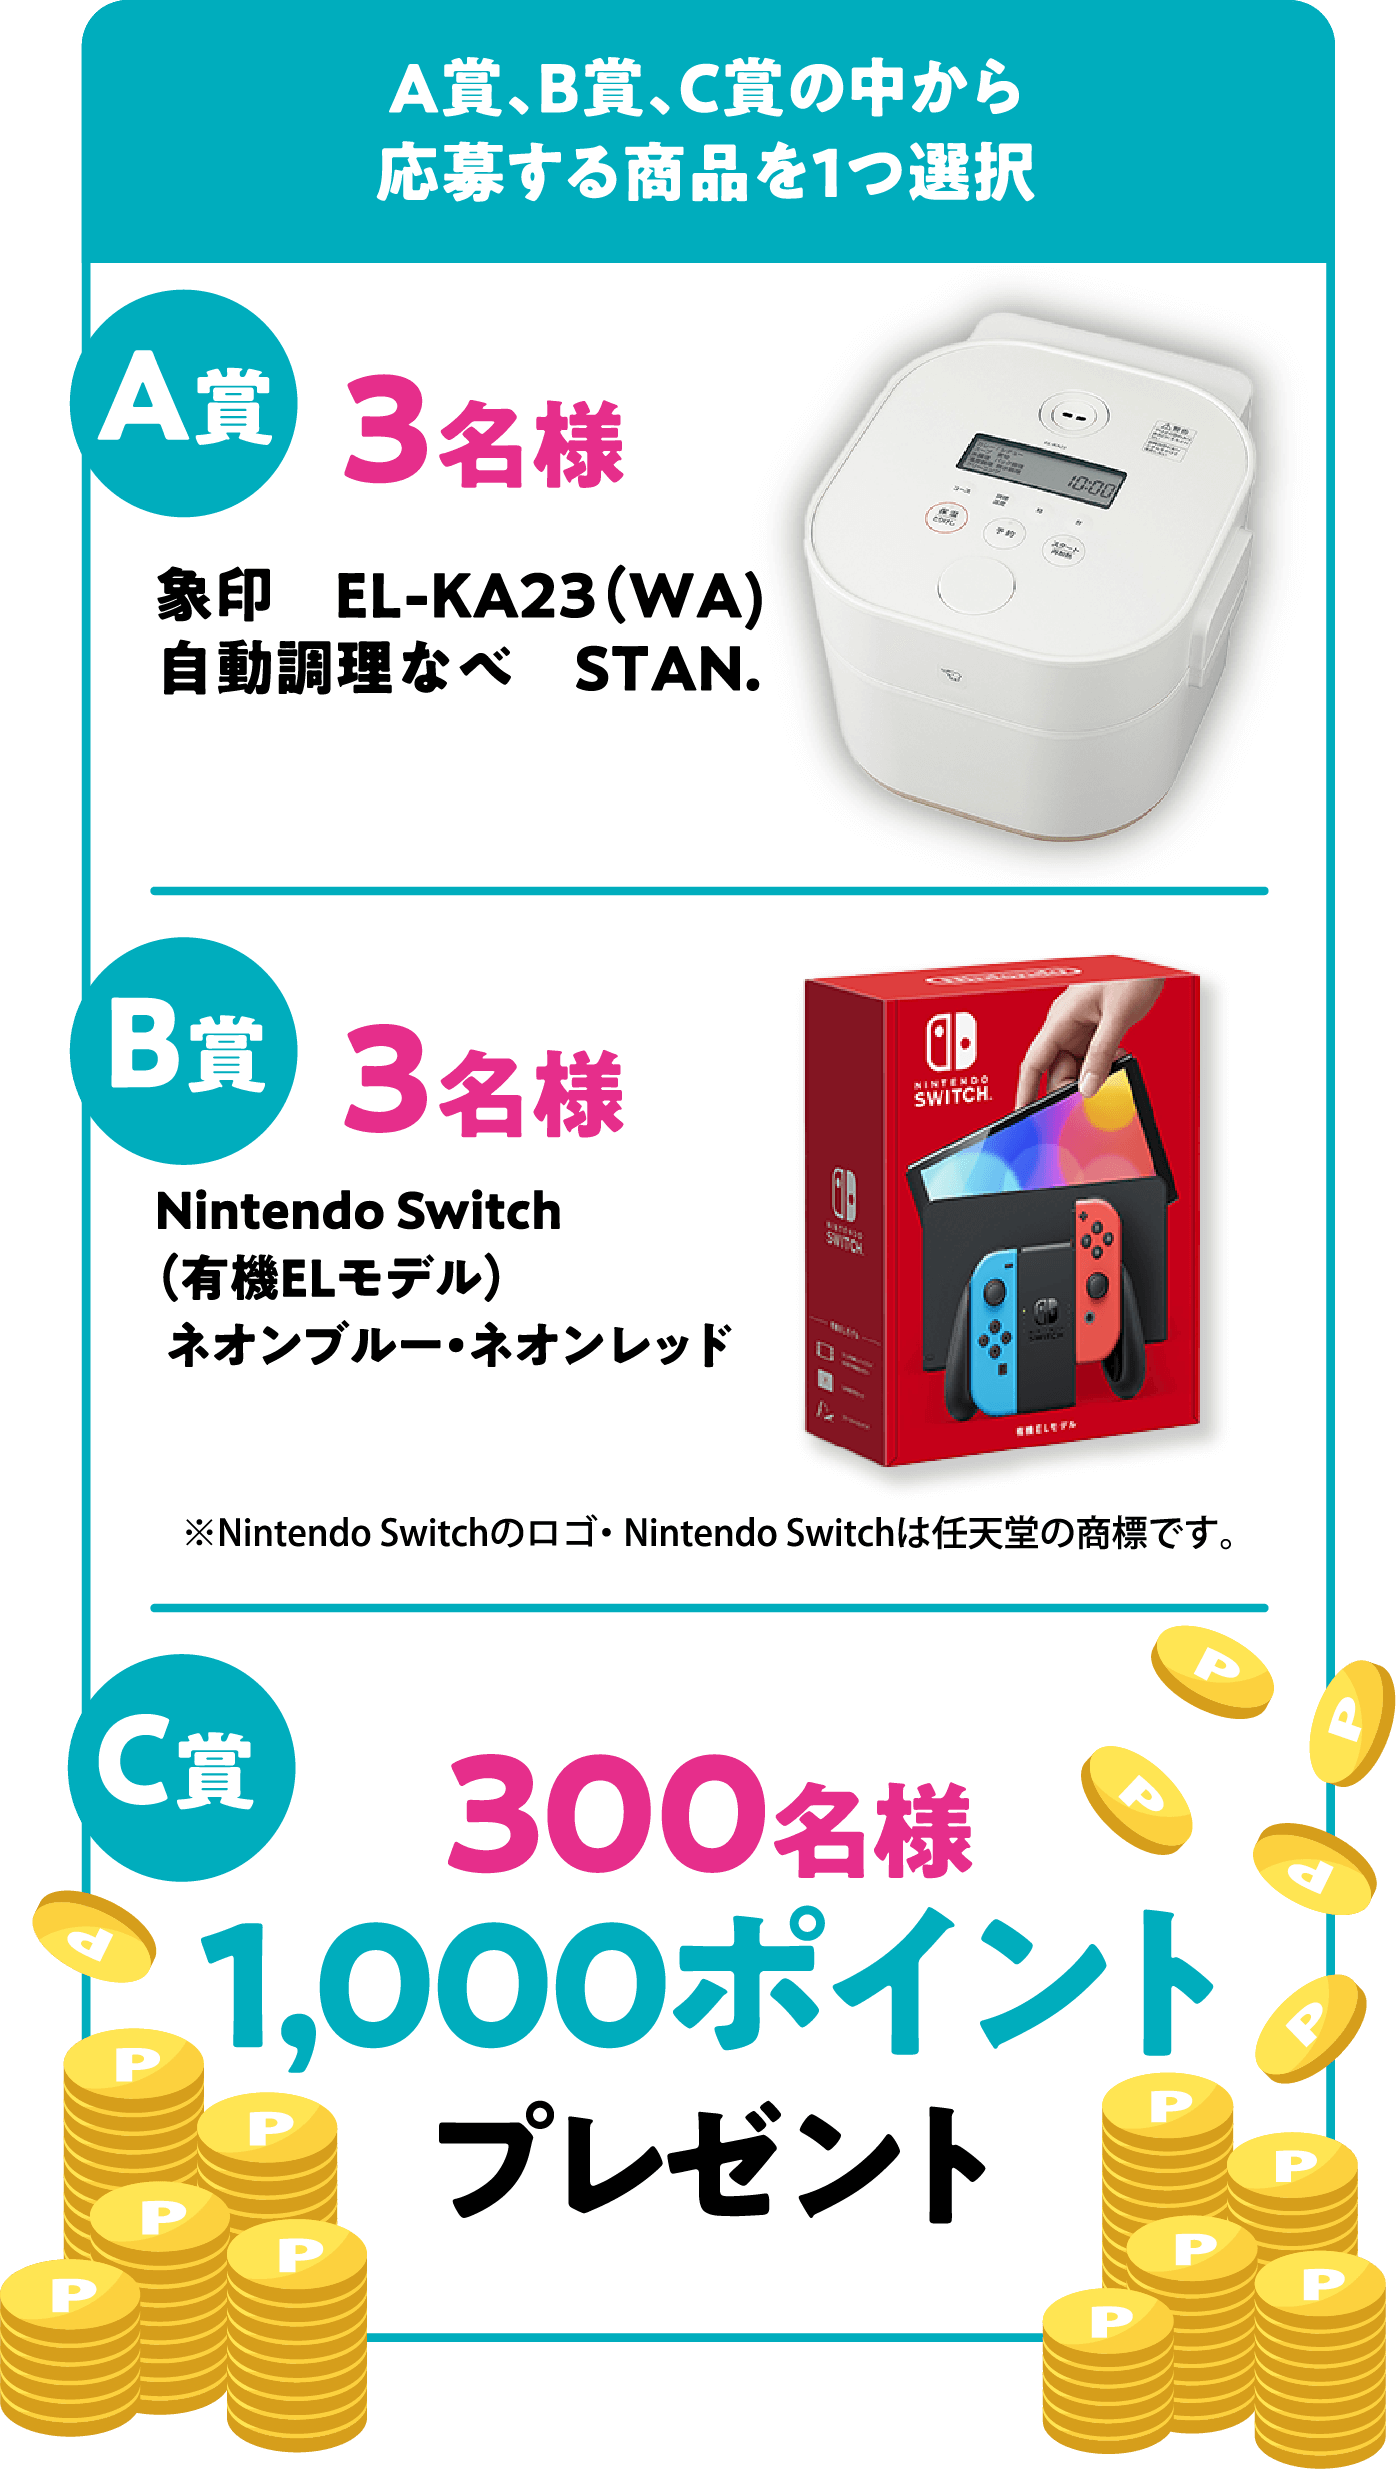 A賞、B賞、C賞の中から応募する商品を1つ選択 A賞 3名様 象印　EL-KA23（WA）自動調理なべ　STAN. B賞 3名様 Nintendo Switch（有機ELモデル）ネオンブルー・ネオンレッド ※Nintendo Switchのロゴ・ Nintendo Switchは任天堂の商標です。 C賞 300名様 1,000ポイント プレゼント